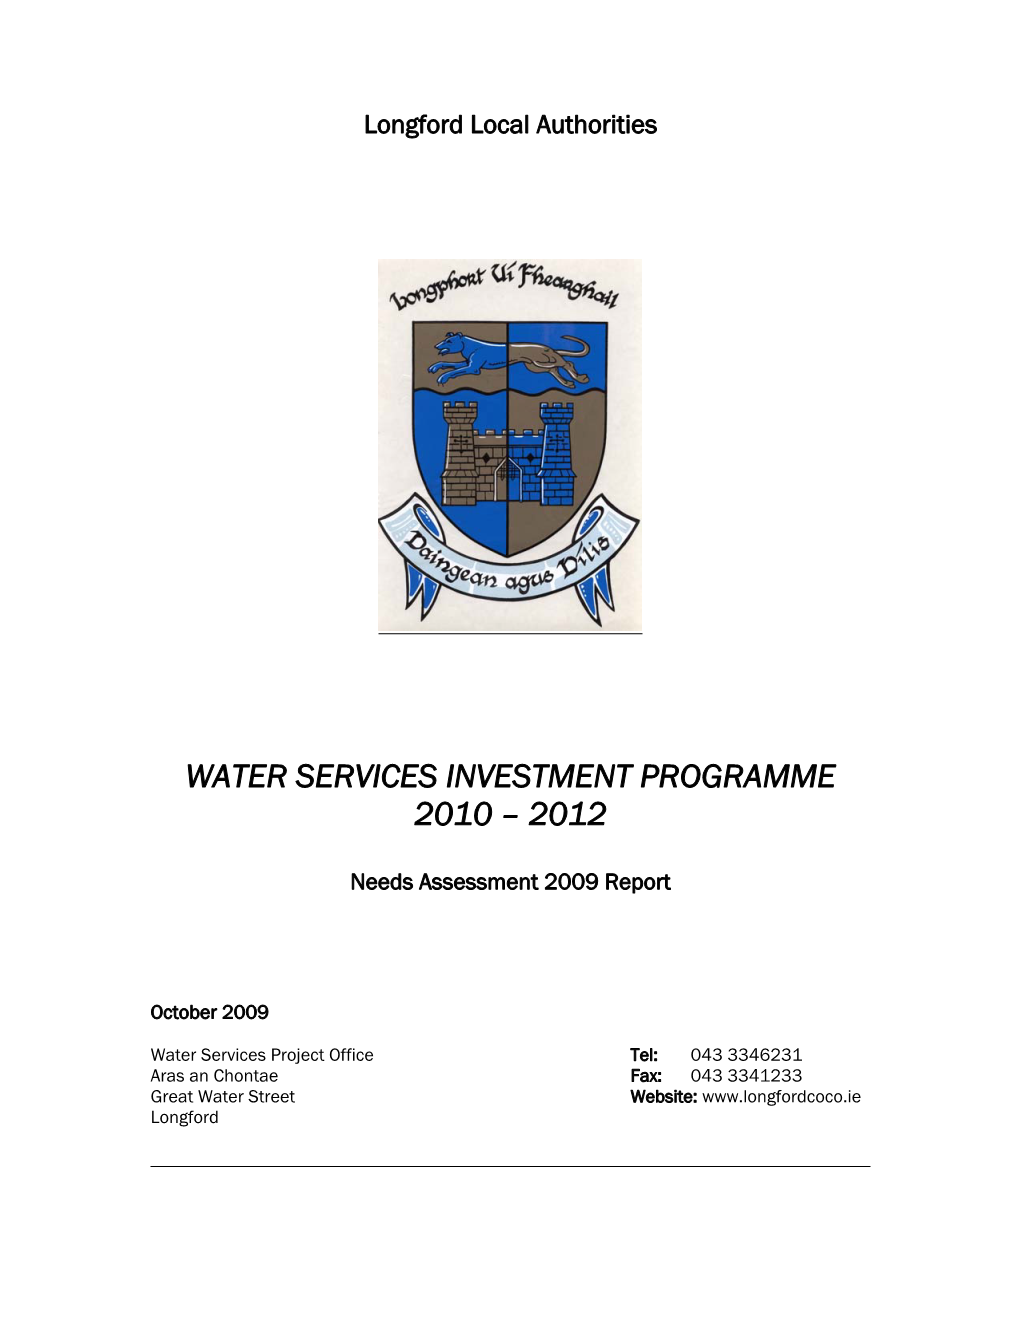 Needs Assessment 2009 Report